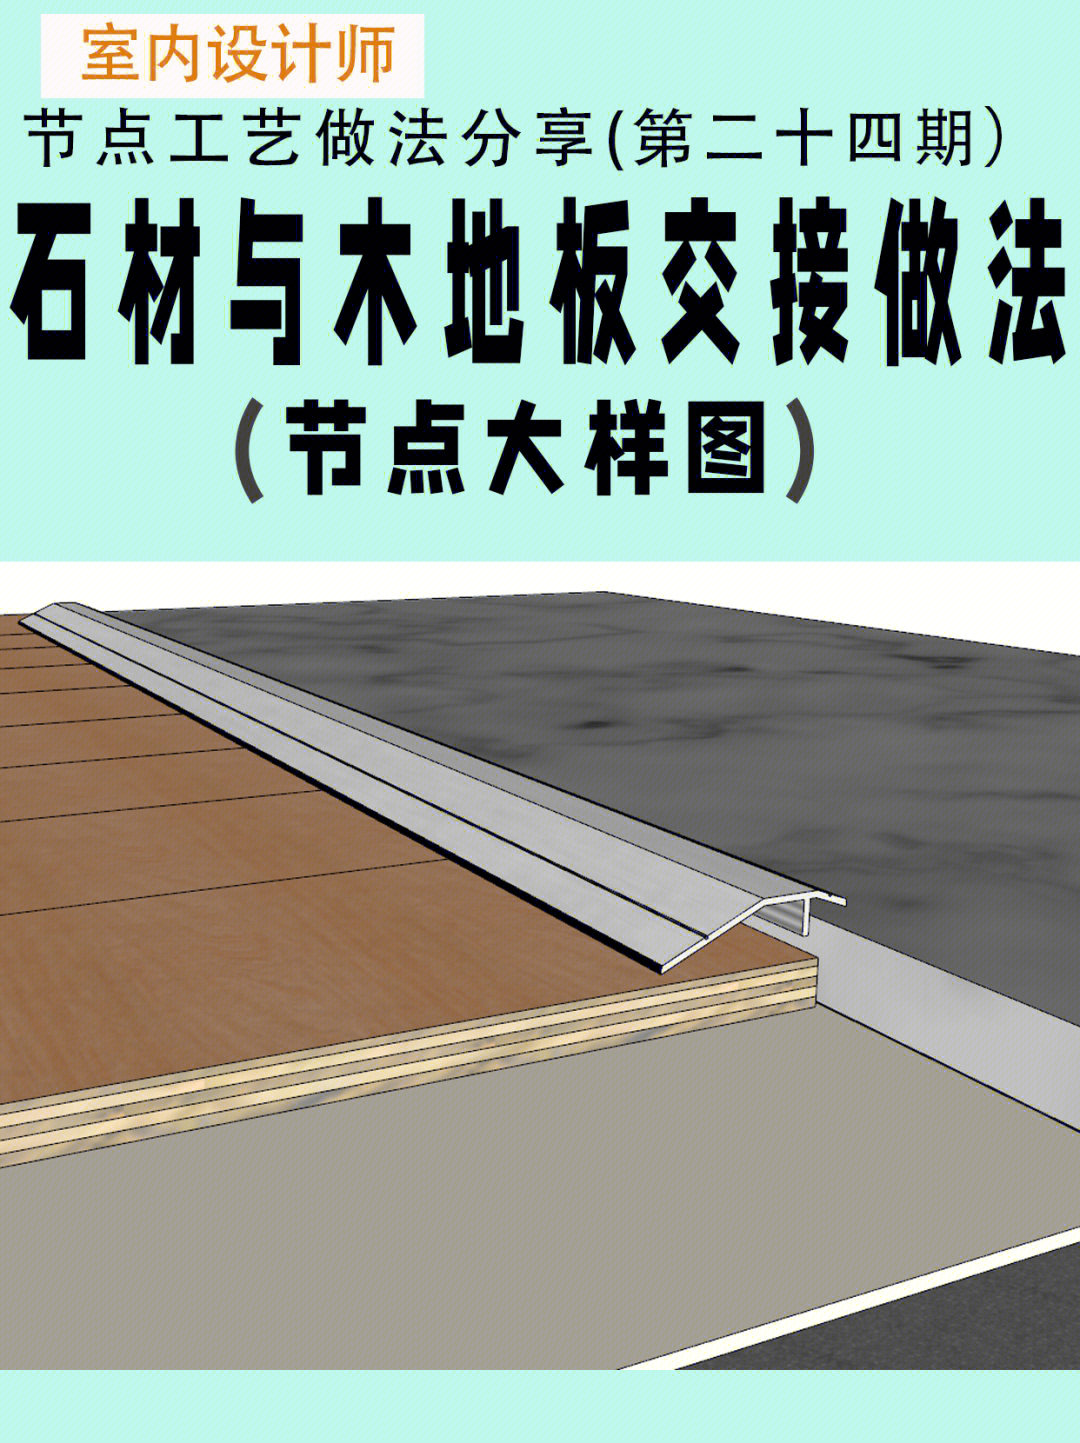 木地板铺设施工工艺图片